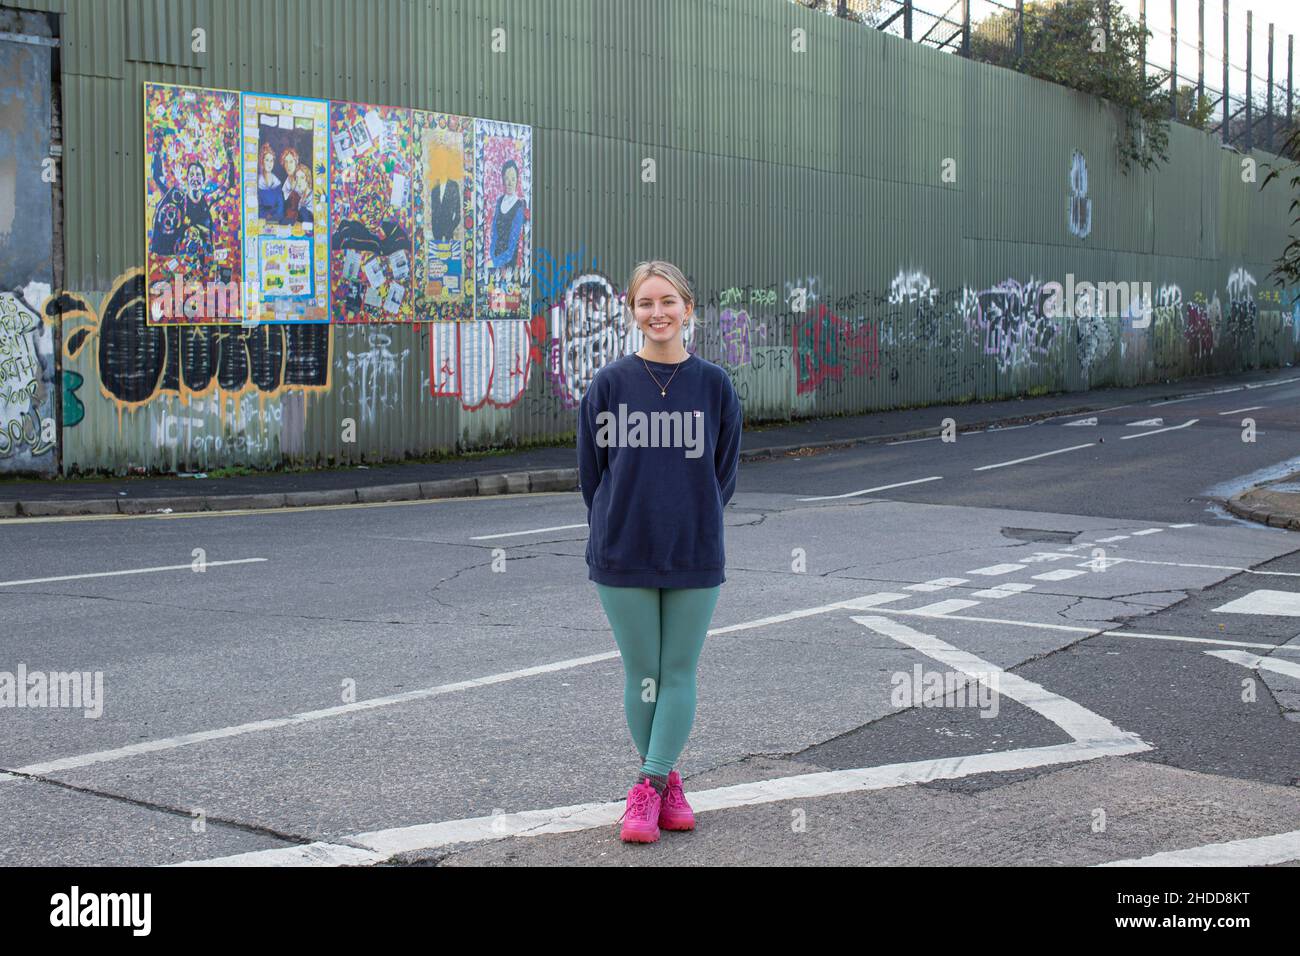 Amy Rafferty, de Trademark, Community Organisation, à l'extérieur de son bureau, avec des peintures murales et graffitis colorés sur le mur de la paix, ou Peace Line, en train de courir le long de la coupe Banque D'Images